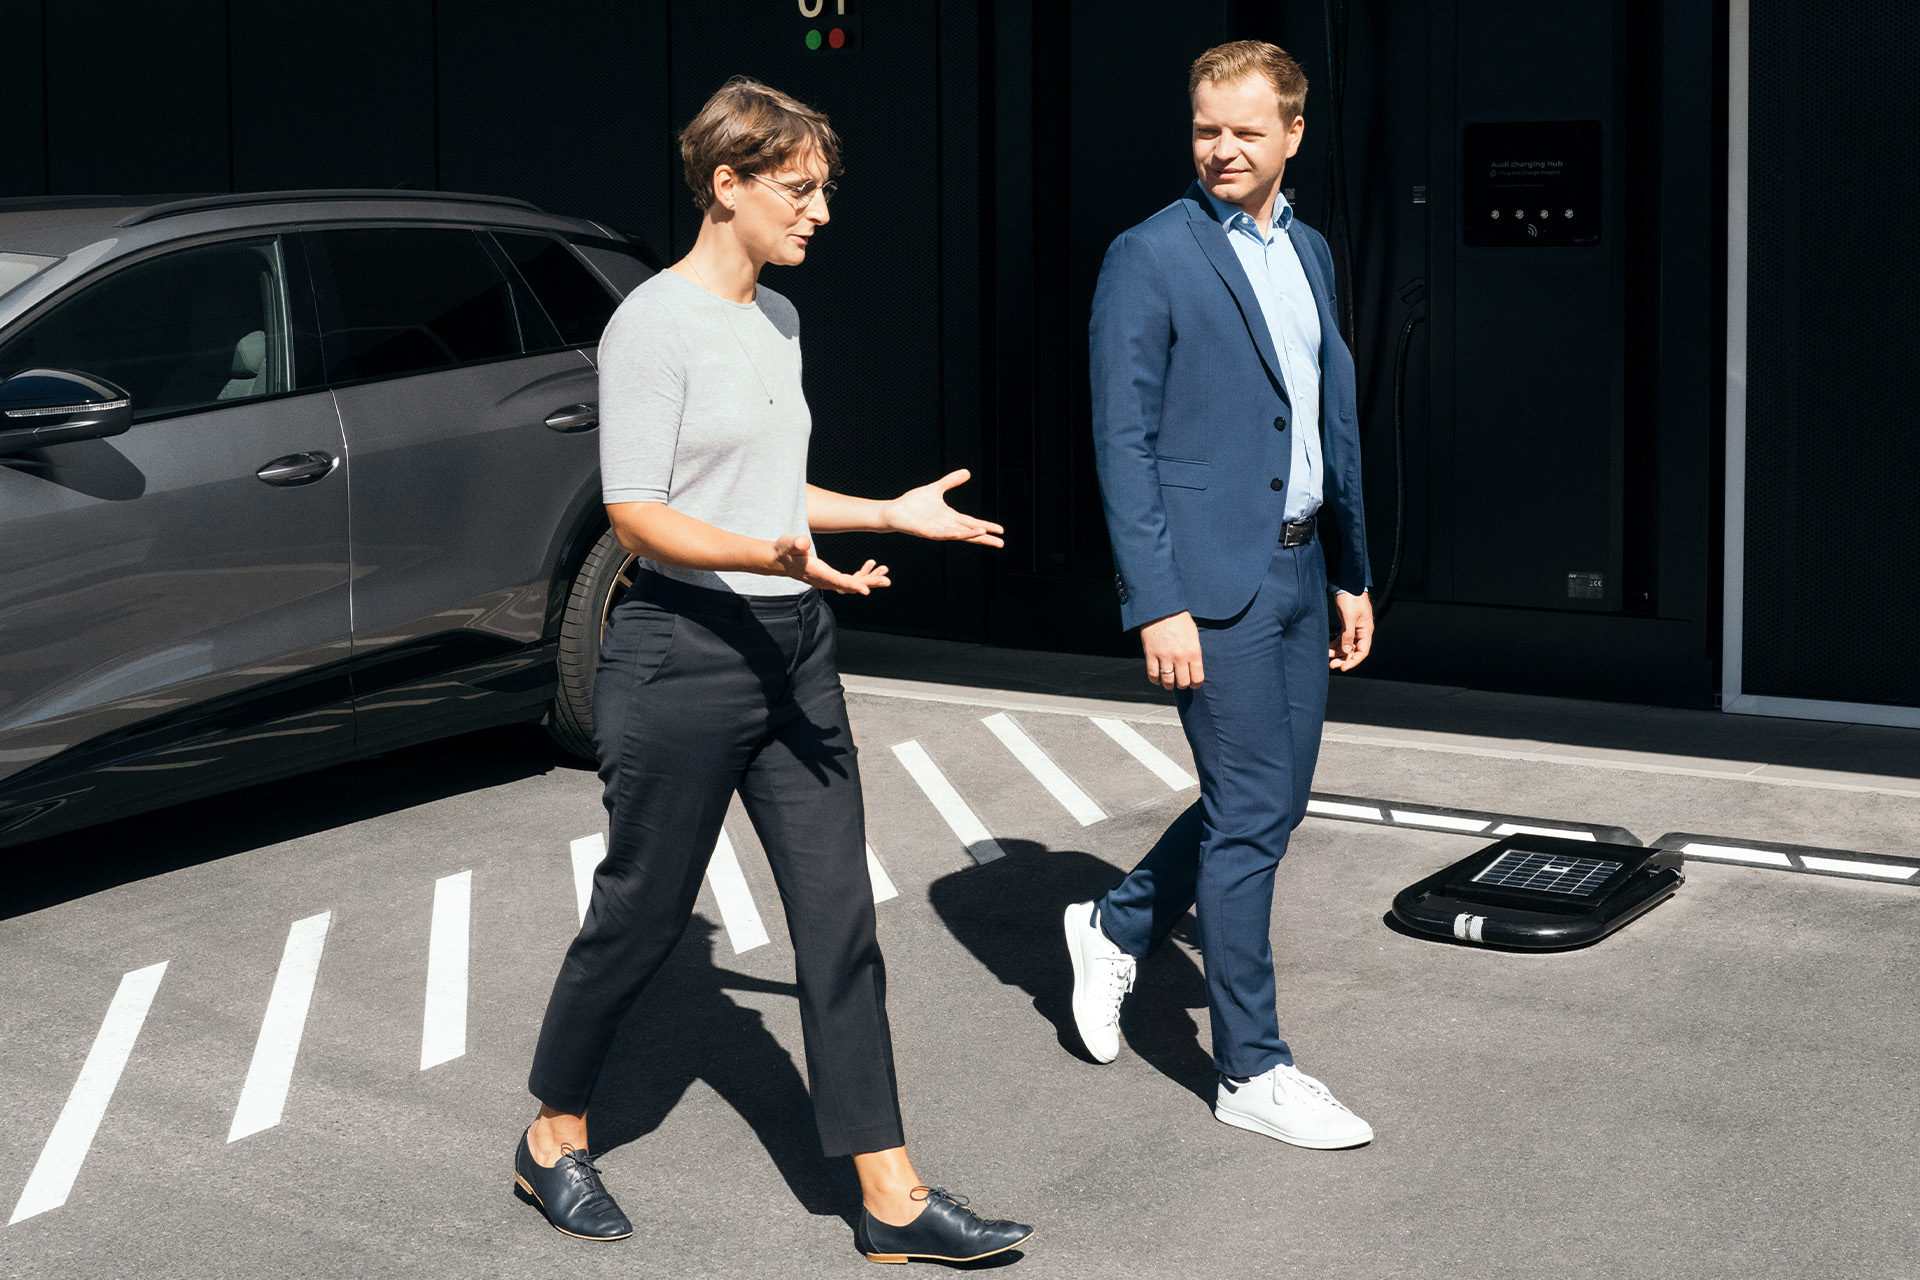 Les experts en développement durable Dr Johanna Klewitz et Malte Vömel traversent le parking devant le Audi charging hub à Nuremberg.